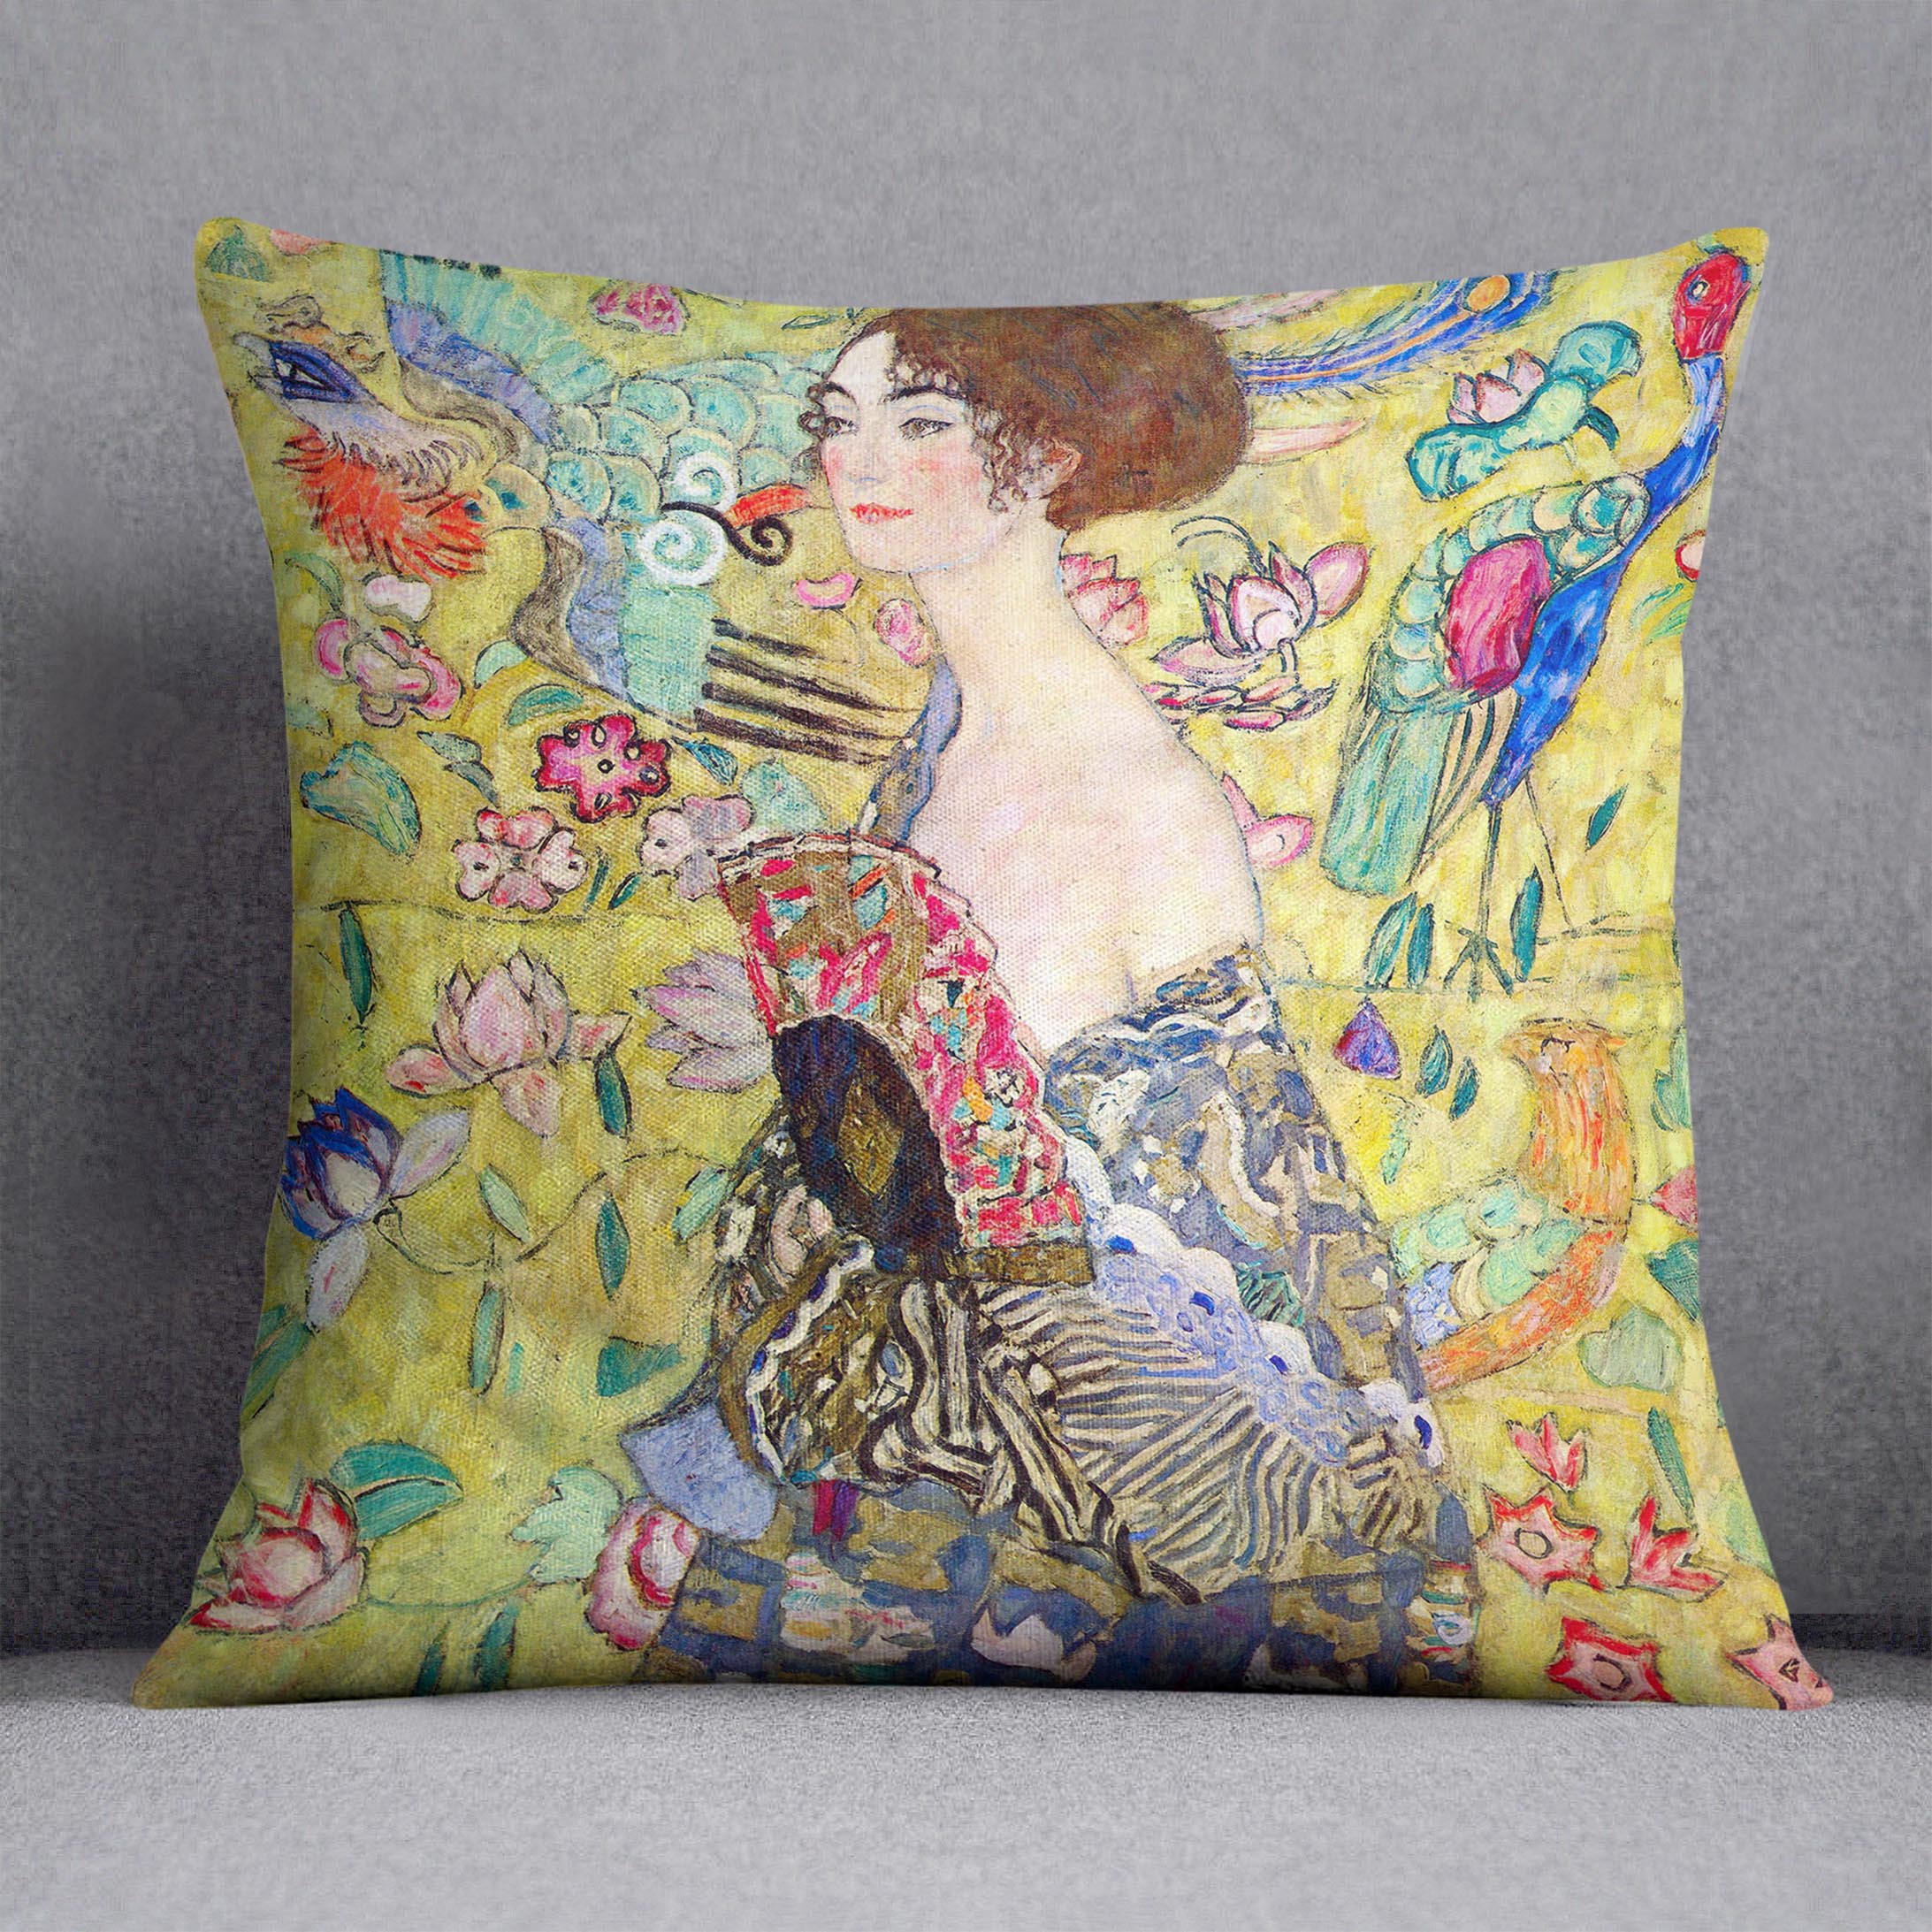 Lady with fan by Klimt Cushion